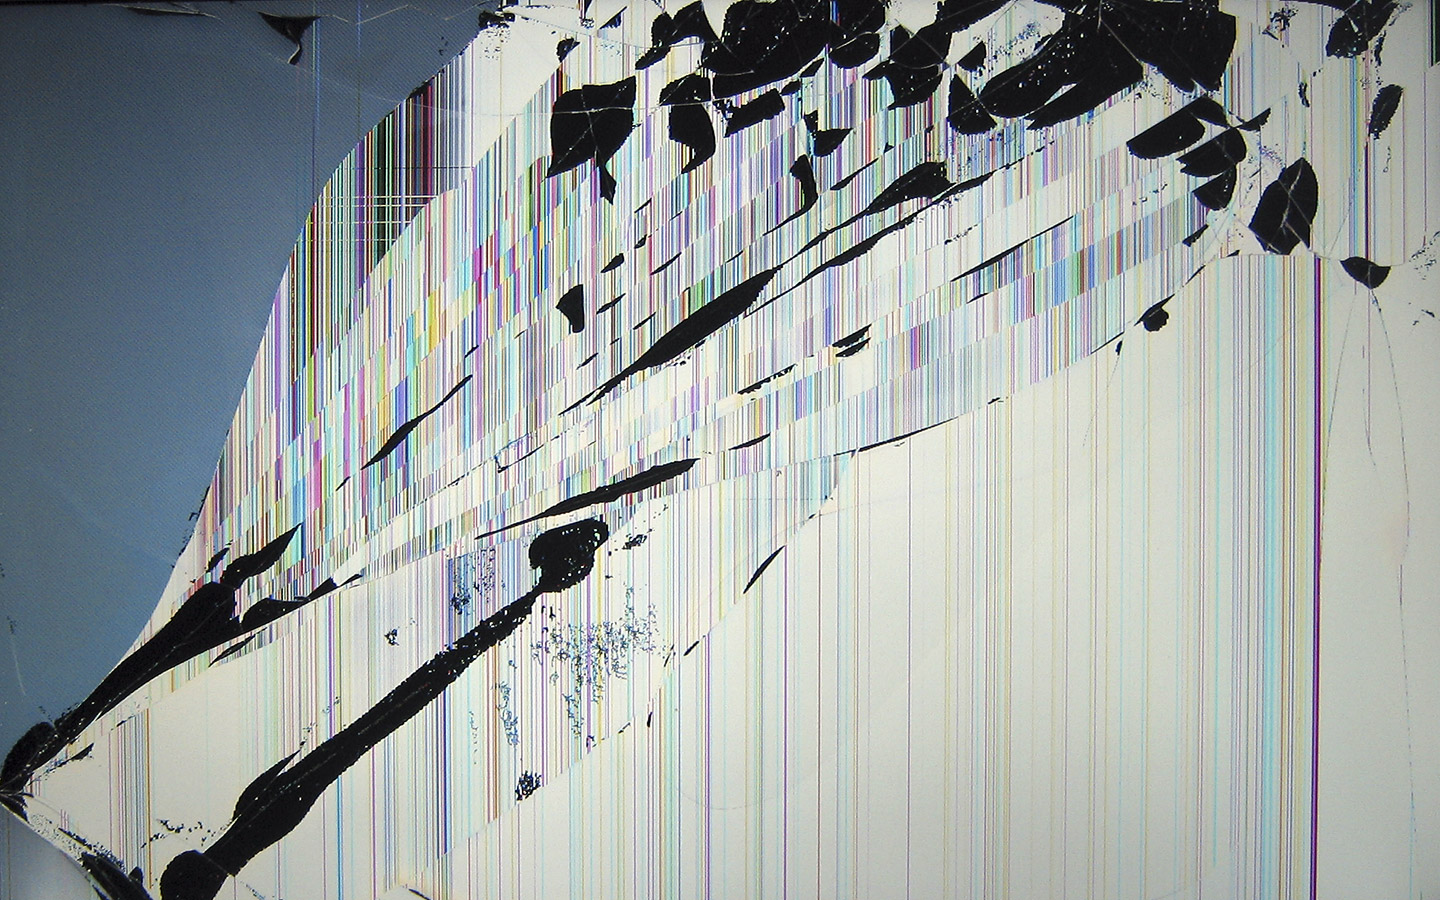 49+] Cracked TV Screen Prank Wallpaper - WallpaperSafari